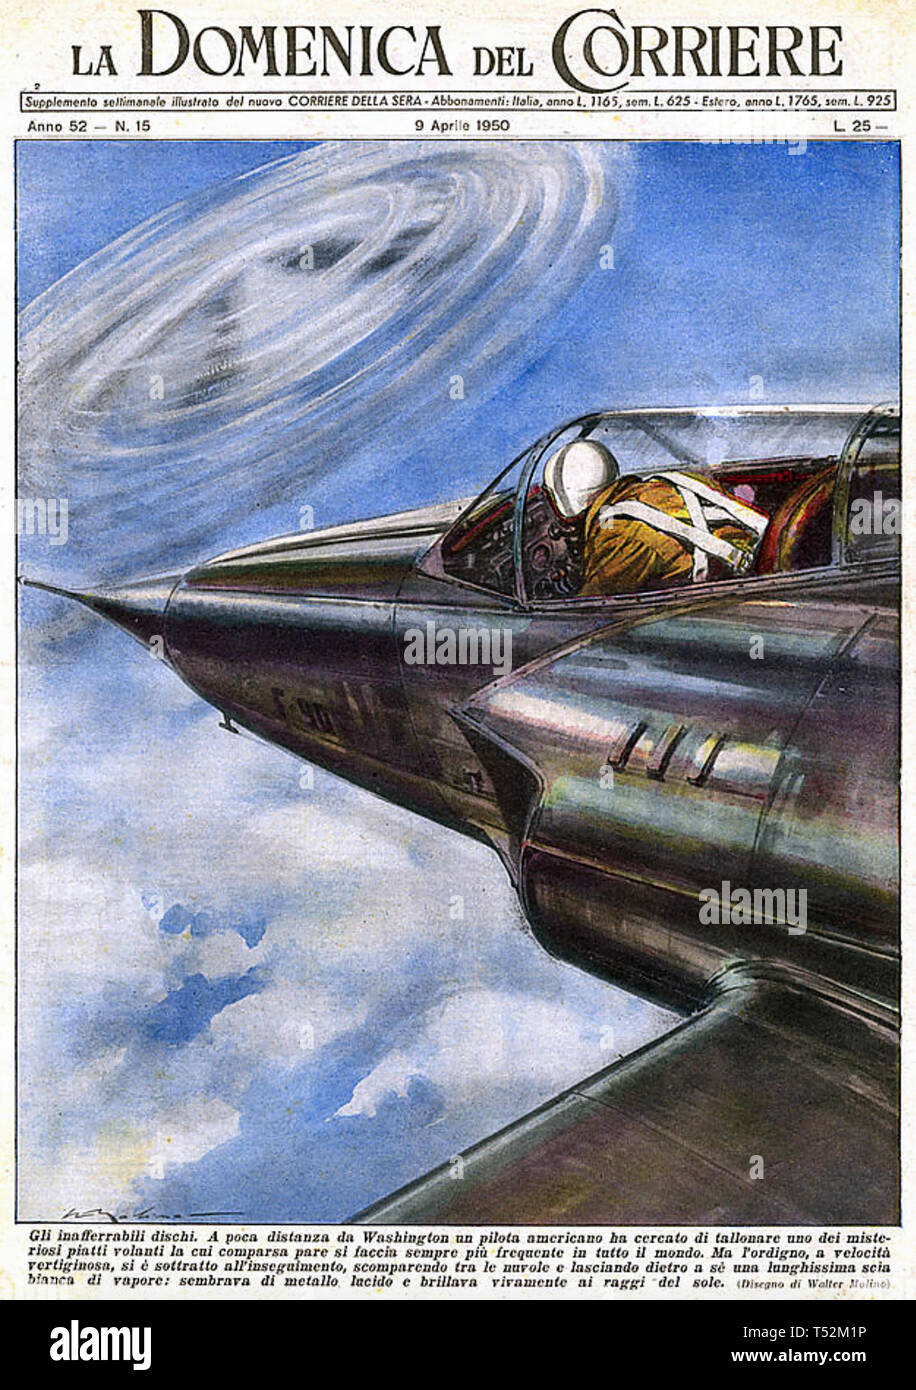 UFO eine imaginäre Amerikanische Begegnung mit einem UFO wie auf dem Cover des italienischen Magazin am 9. April 1950 gezeigt Stockfoto